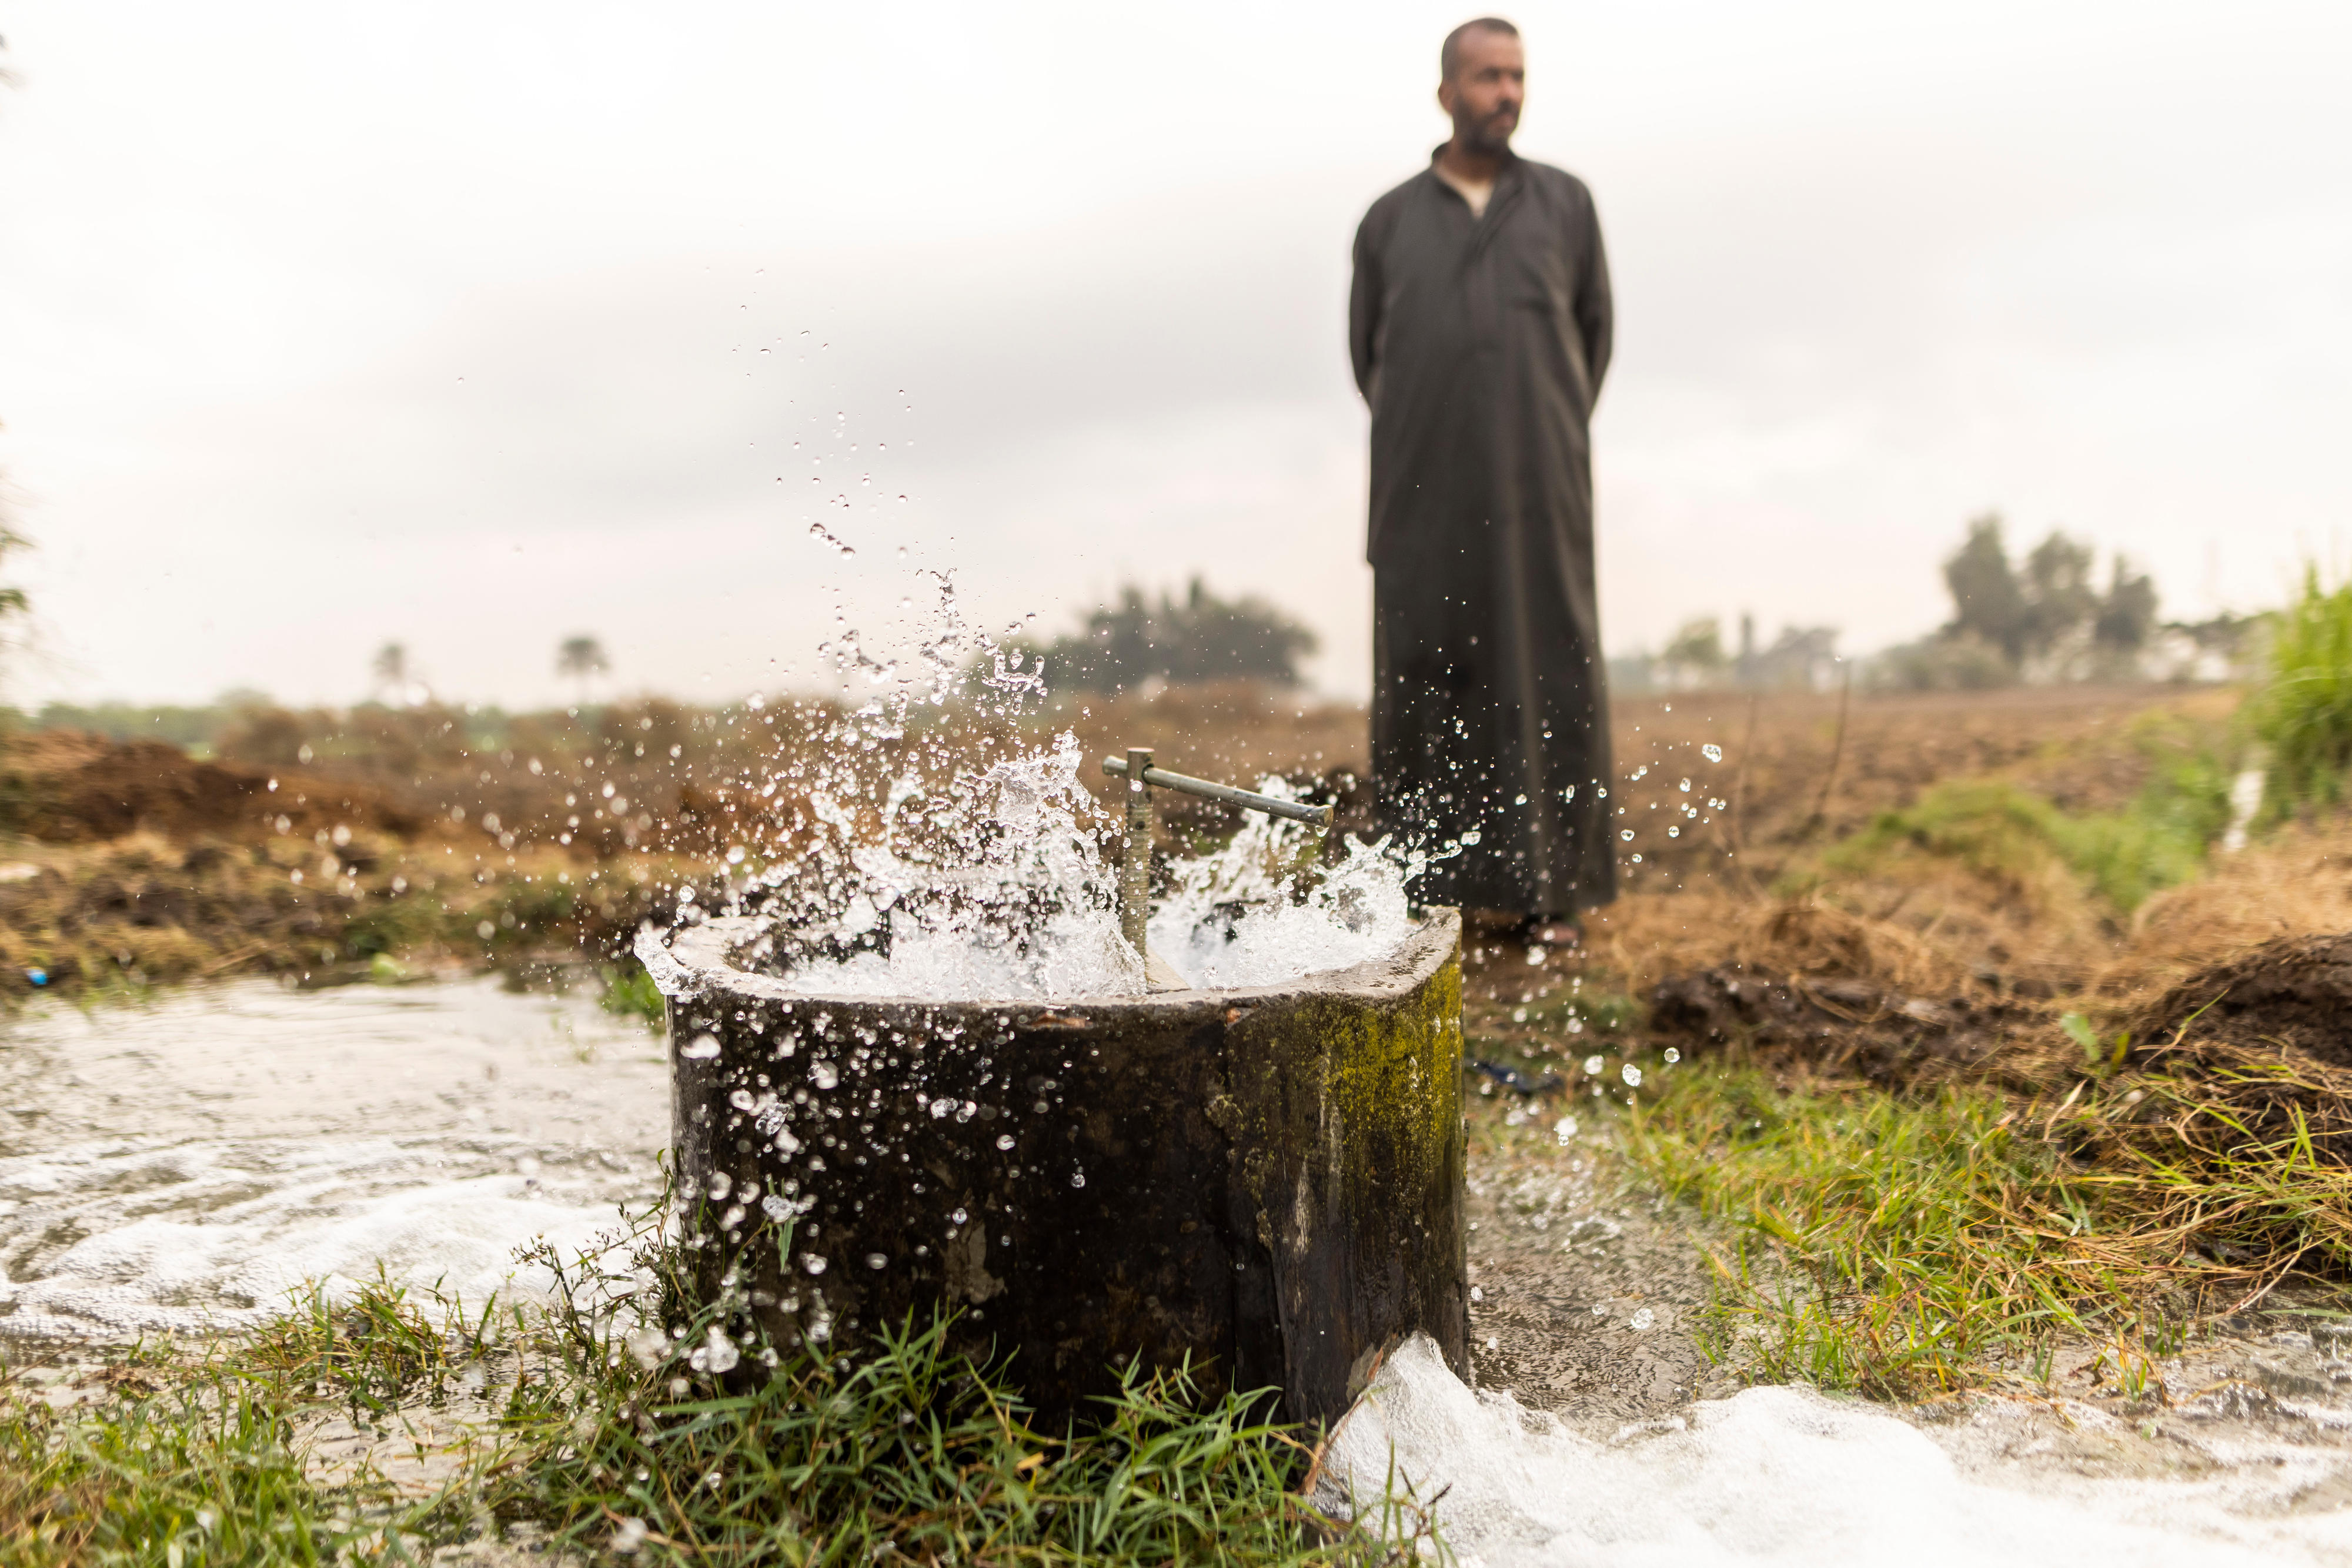 Bewässerungsstelle eines Projekts zur Verbesserung des Bewässerungssystems in ländlichen Gebieten in Ägypten